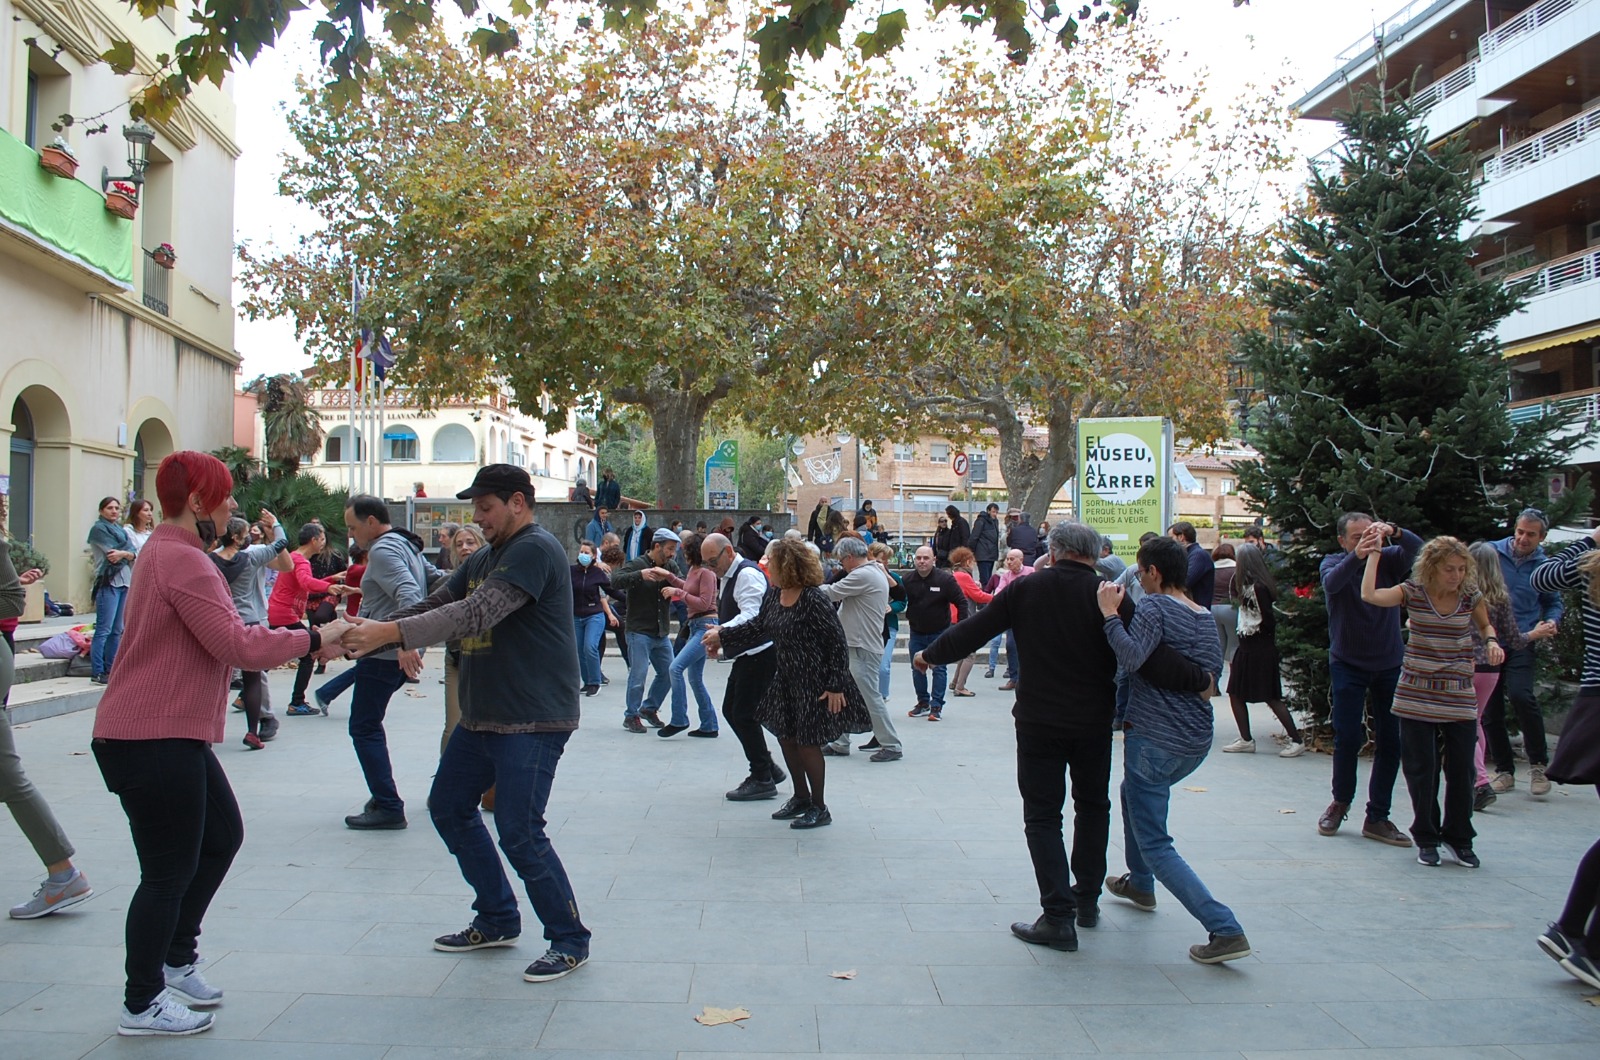 Concert de lindy hop i ball a la plaa de la Vila, diumenge 28 de novembre